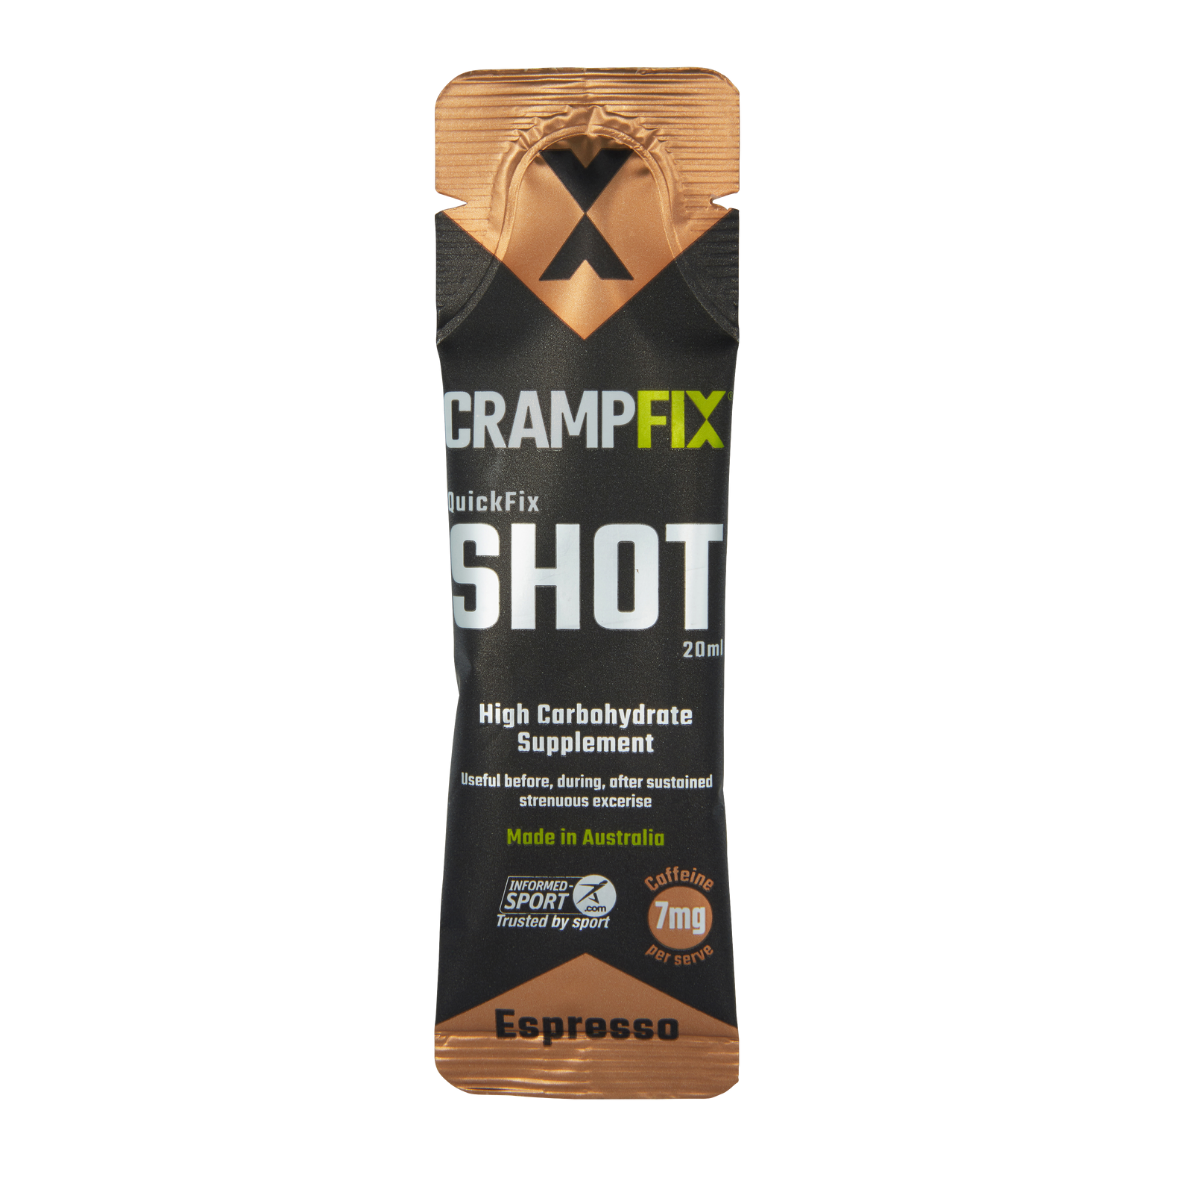 Crampfix - QuickFix Shots - Espresso 20ml